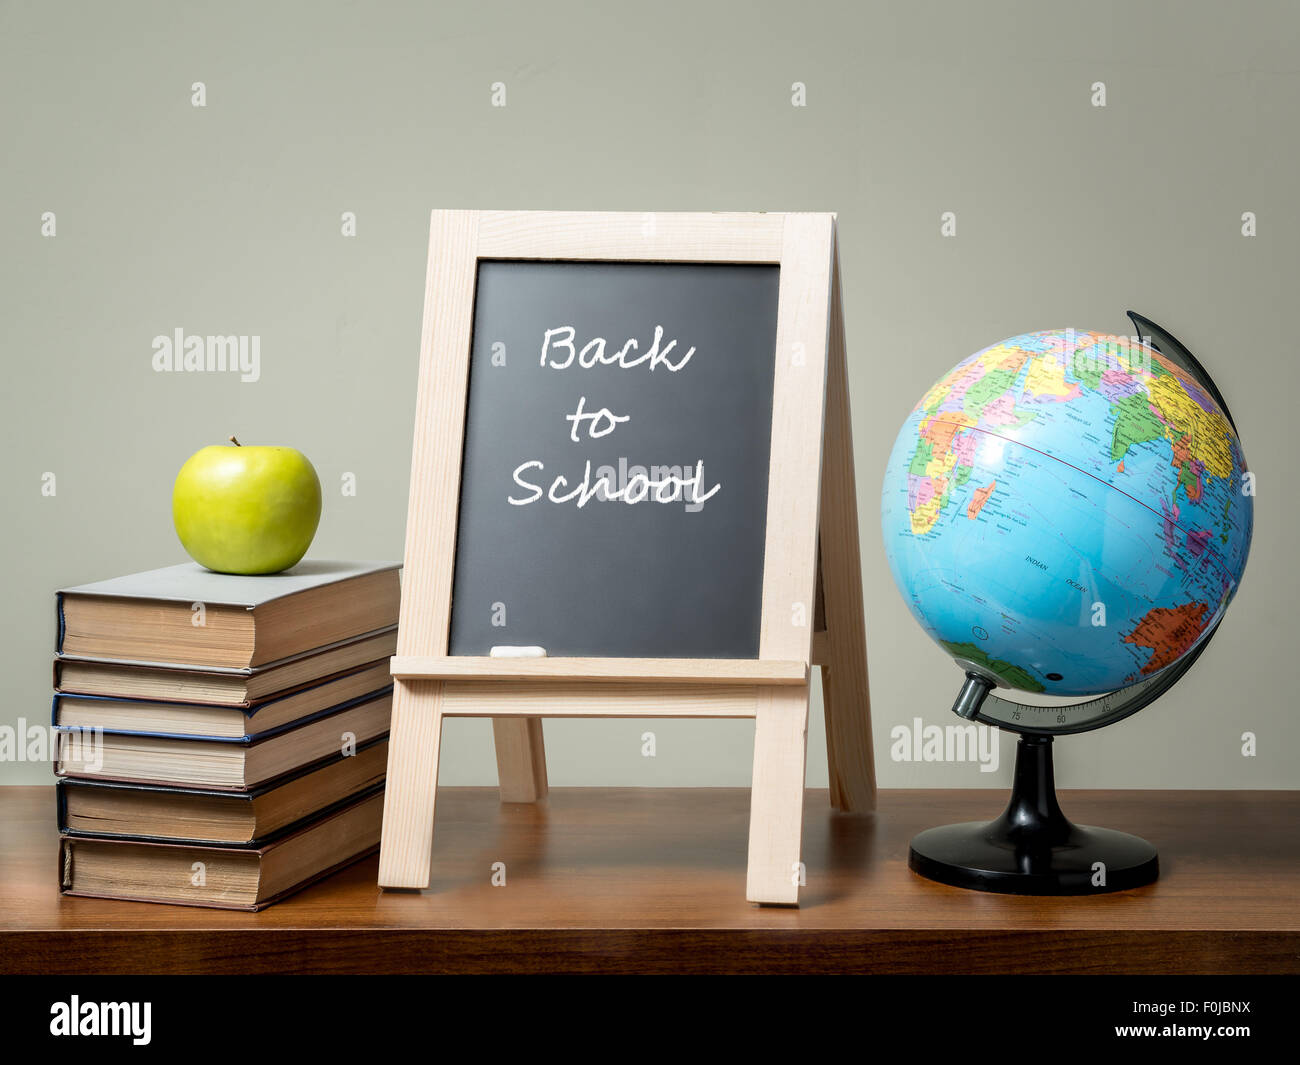 Stapel Bücher mit grünem Apfel, Globe und Tafel mit Back to School Satz alle über grüne Wand auf braunen Schreibtisch gelegt. Stockfoto